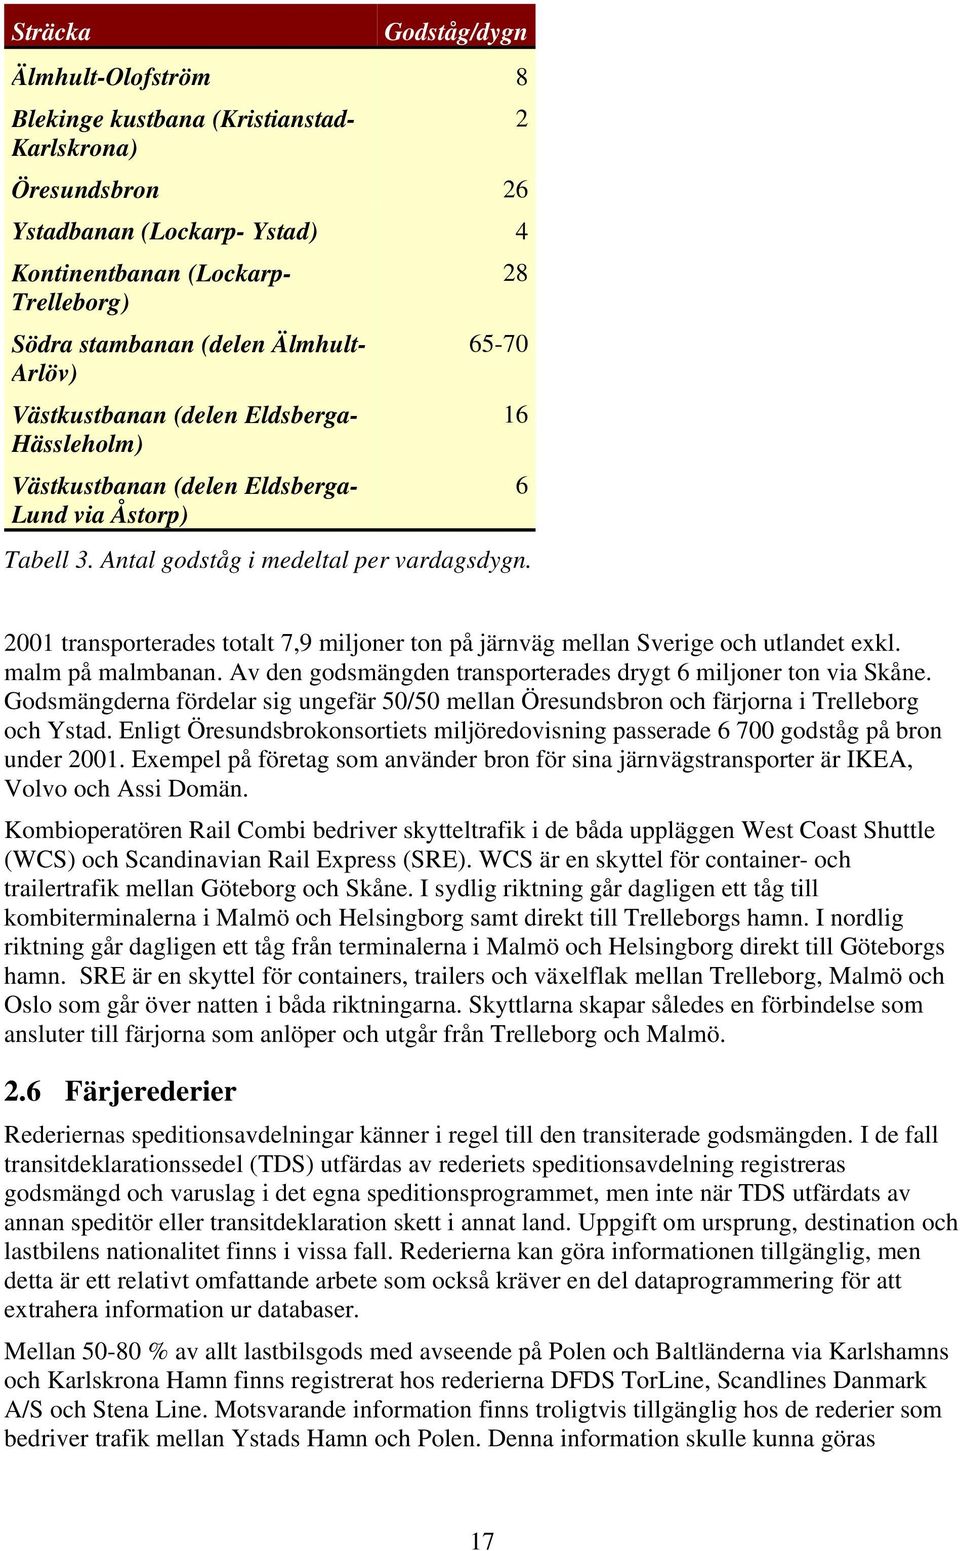 16 6 2001 transporterades totalt 7,9 miljoner ton på järnväg mellan Sverige och utlandet exkl. malm på malmbanan. Av den godsmängden transporterades drygt 6 miljoner ton via Skåne.